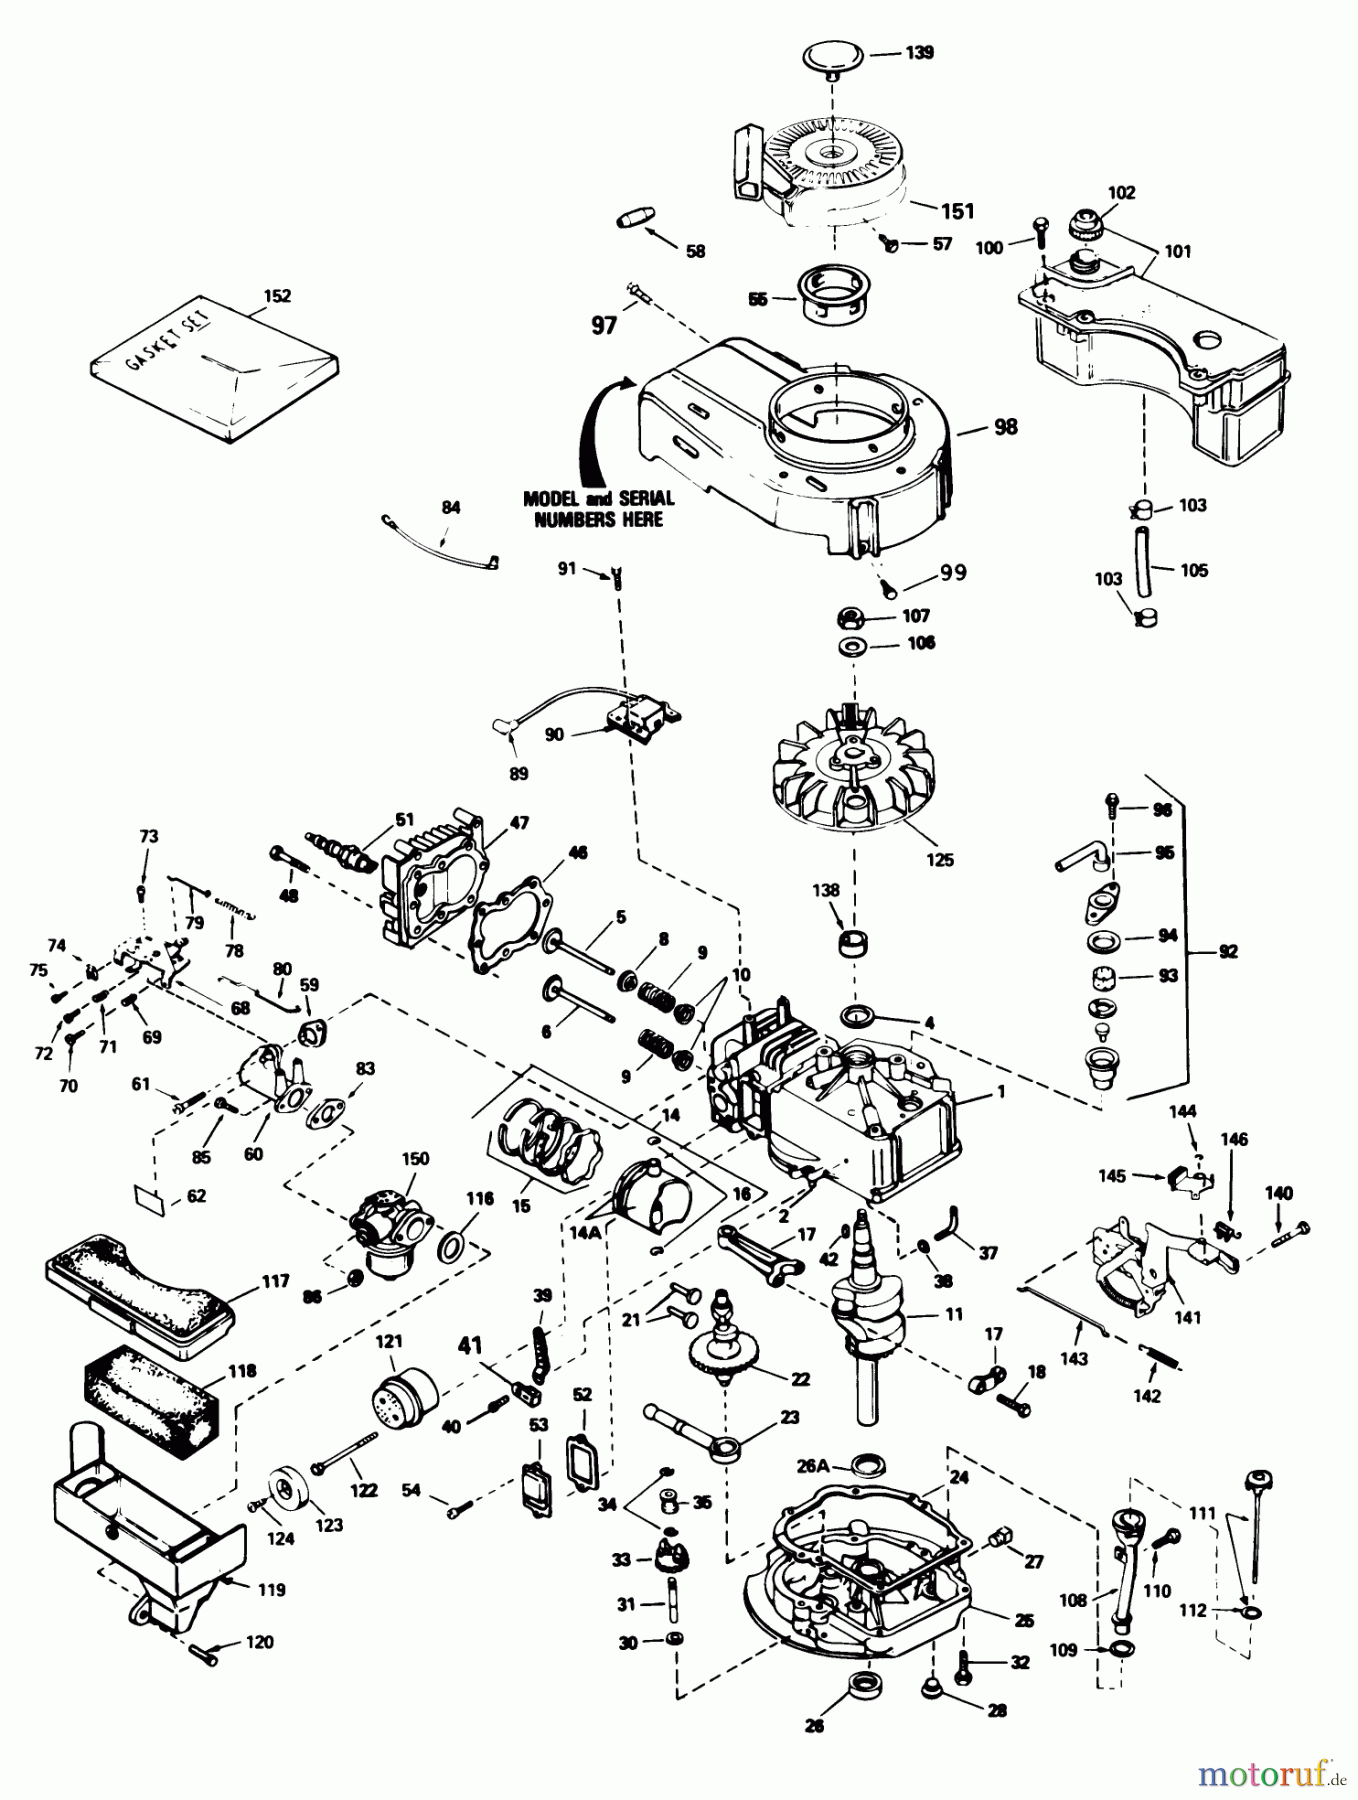  Toro Neu Mowers, Walk-Behind Seite 1 20586 - Toro Lawnmower, 1987 (7000001-7999999) ENGINE MODEL TVS100-44012A